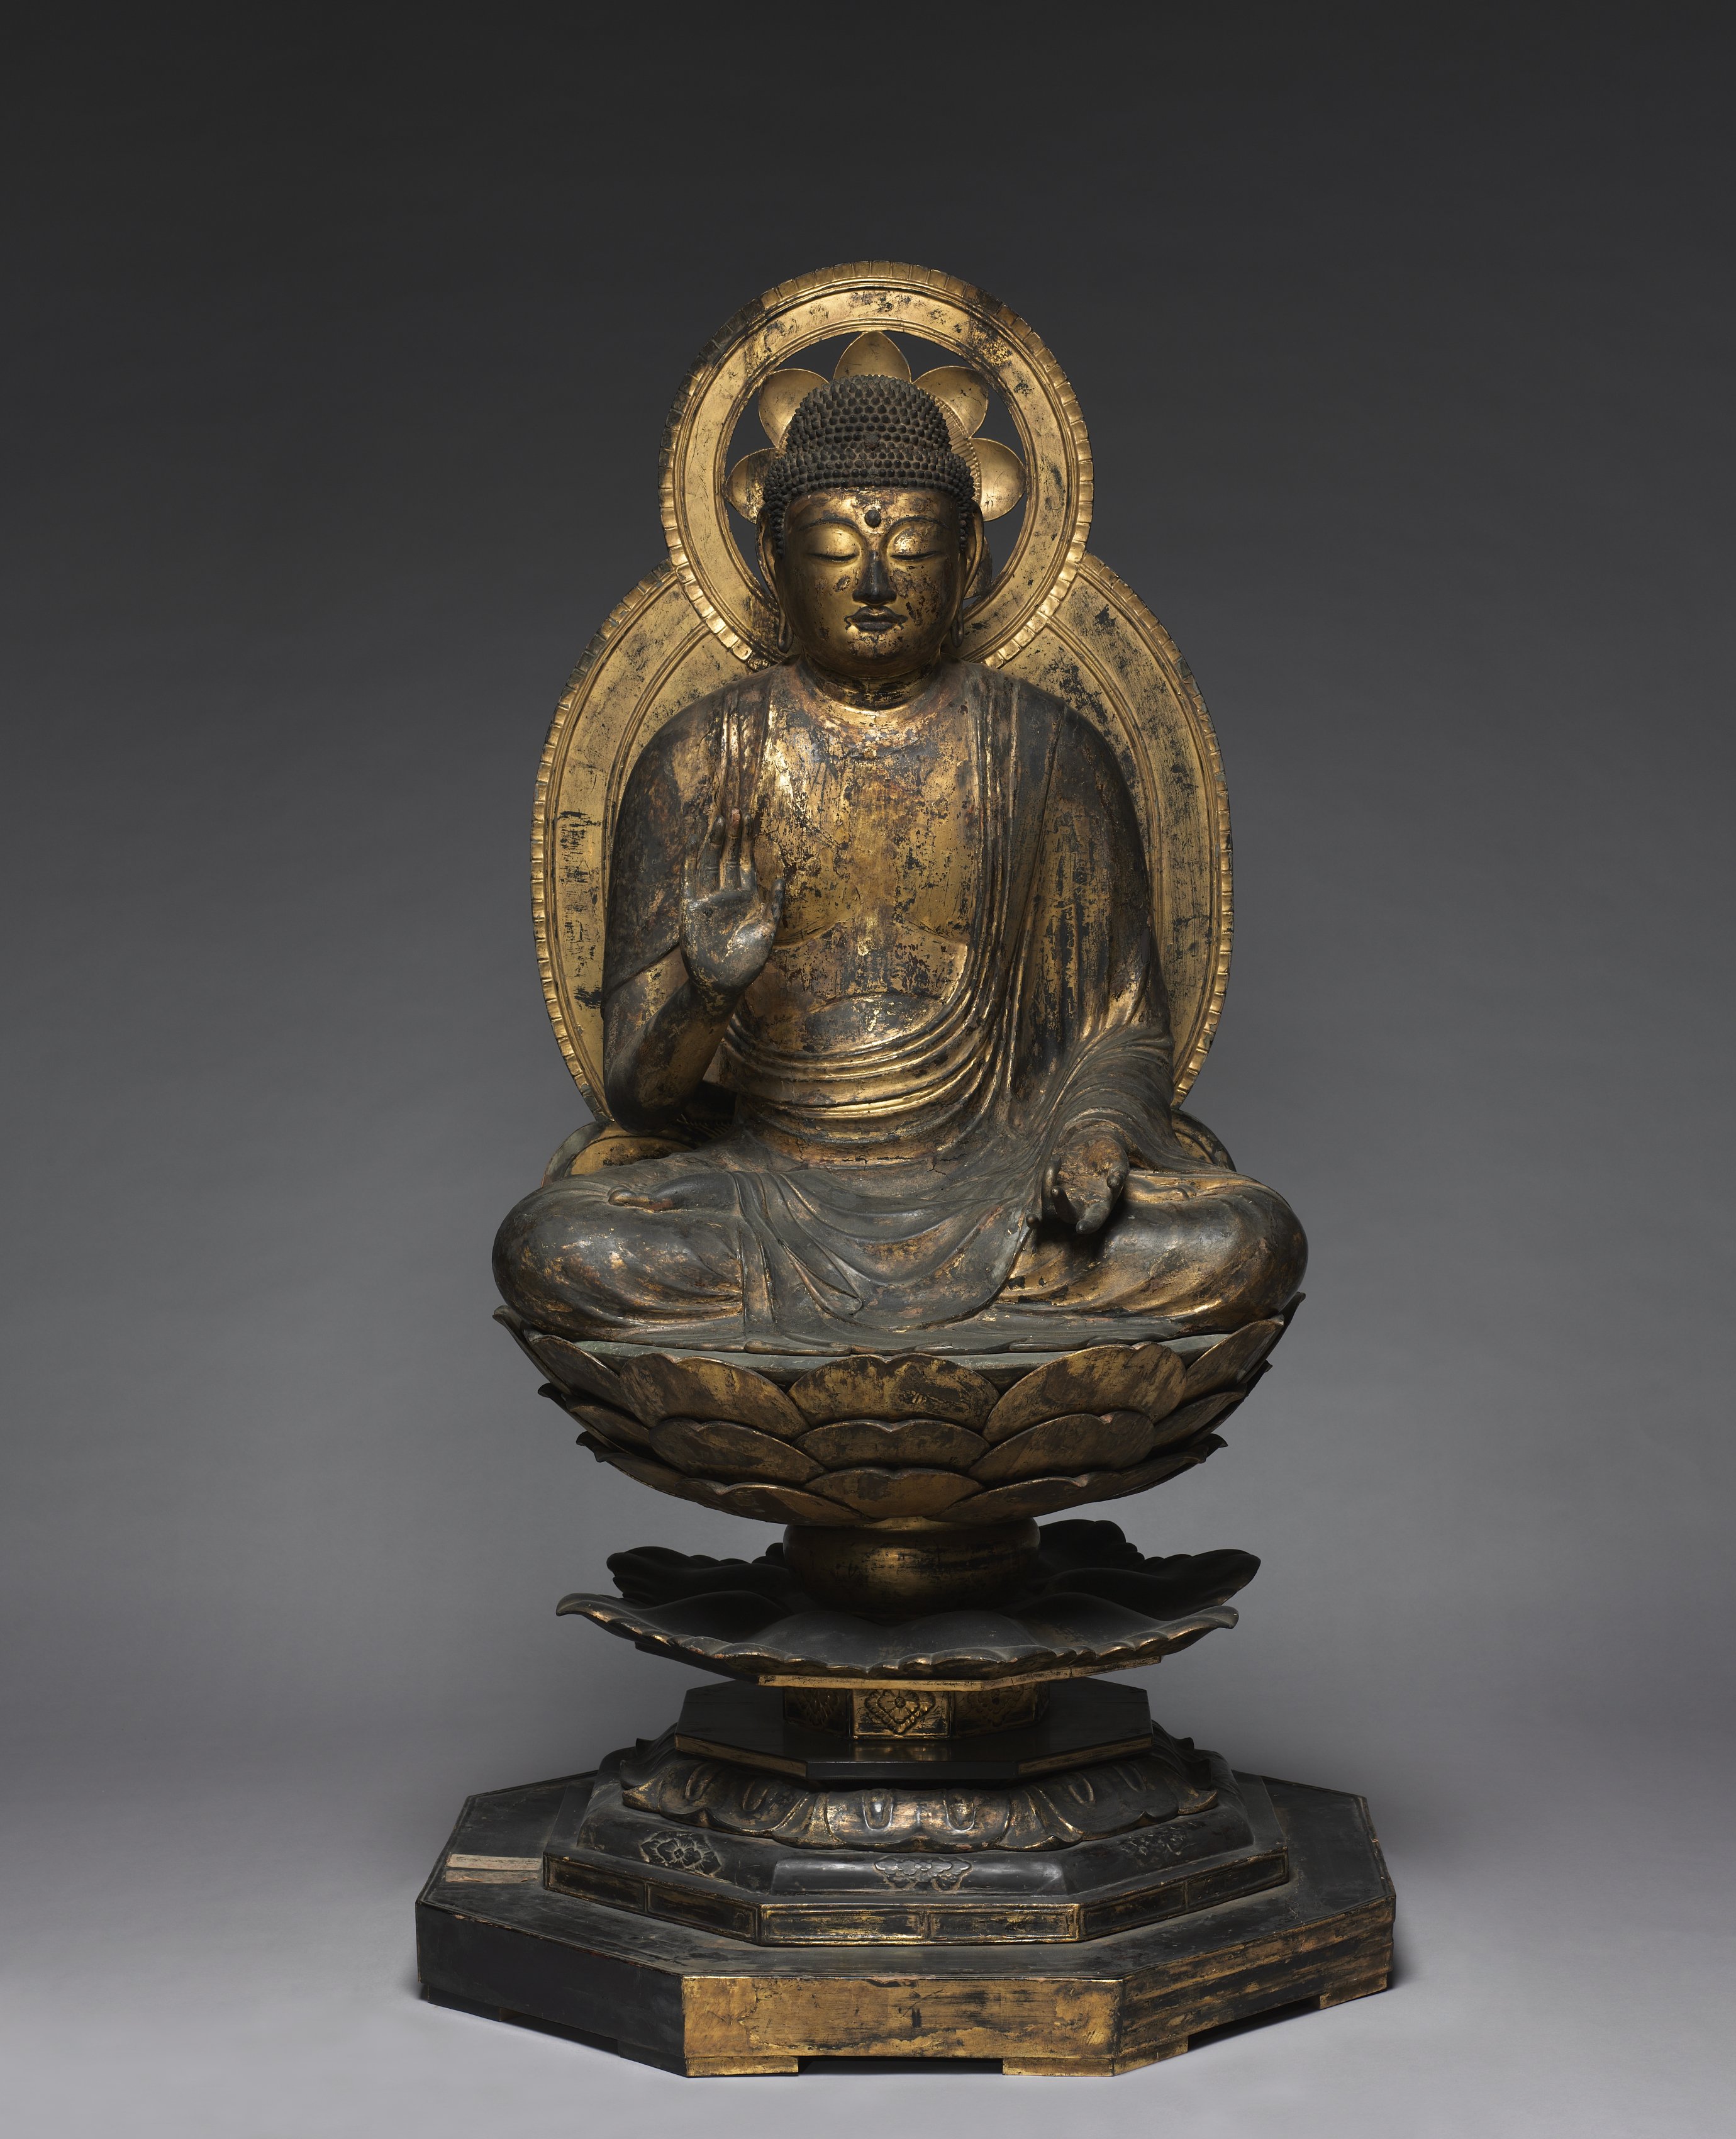 Seated Buddha with Halo